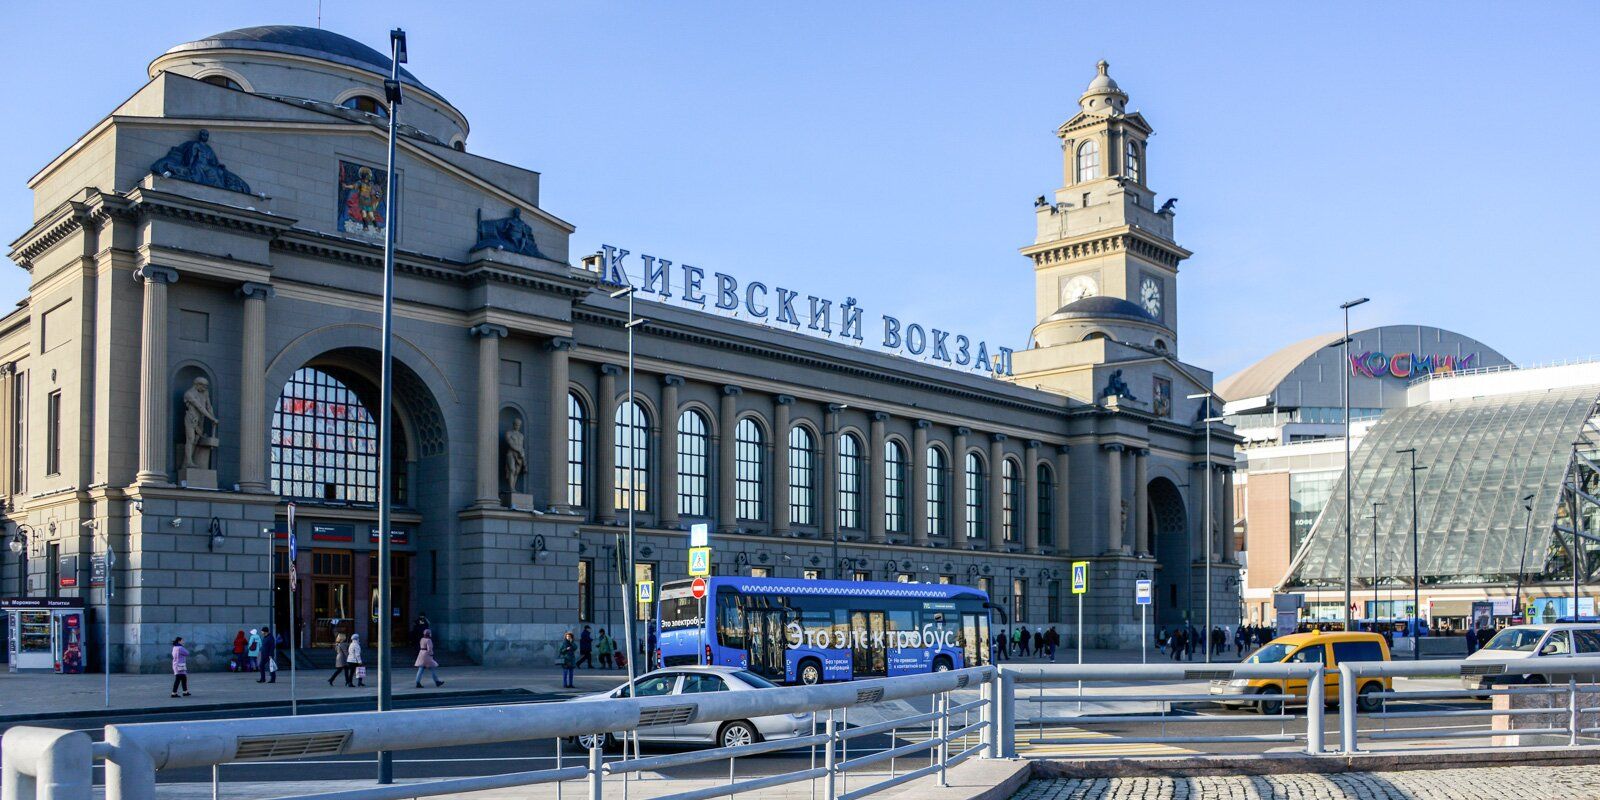 Киевский вокзал телефон